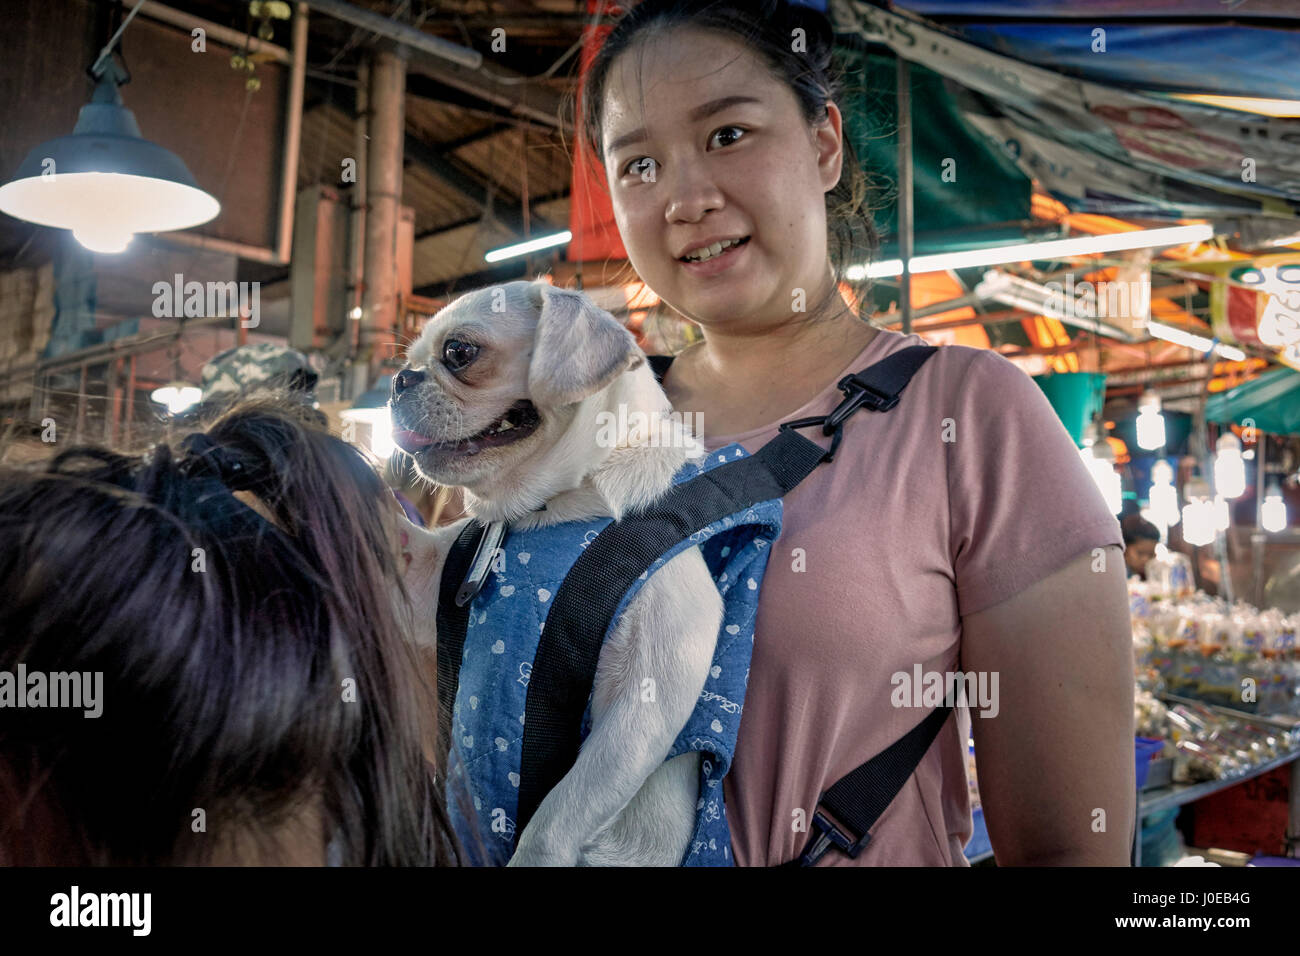 Chien. Femme portant son animal de compagnie dorloté Pug dans un harnais. Thaïlande Asie du Sud-est Banque D'Images